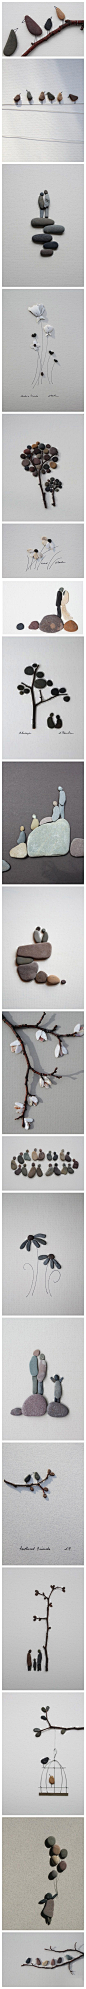 小石块石子制作的石头画 创意装饰画